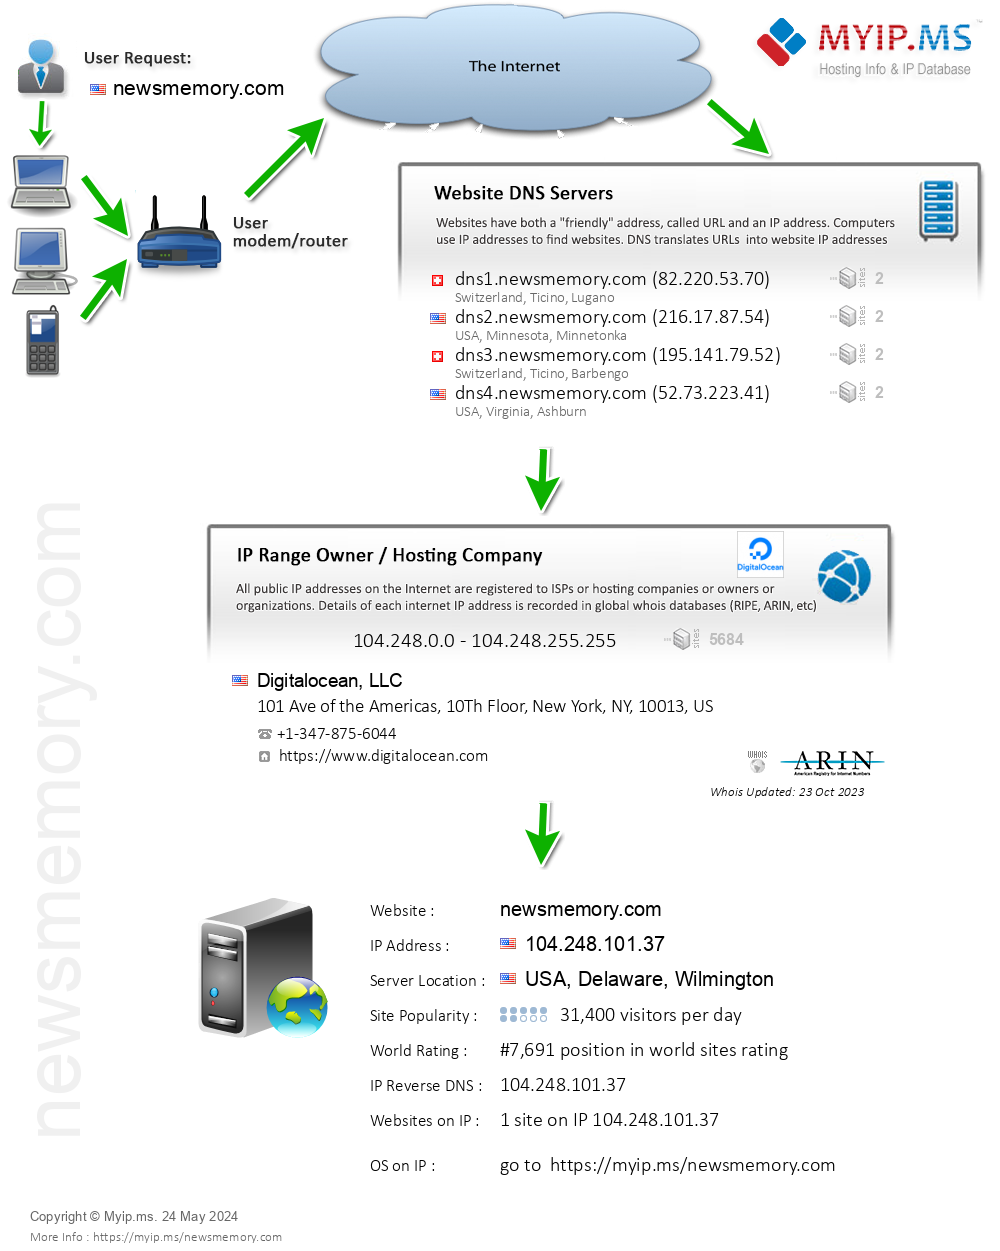 Newsmemory.com - Website Hosting Visual IP Diagram